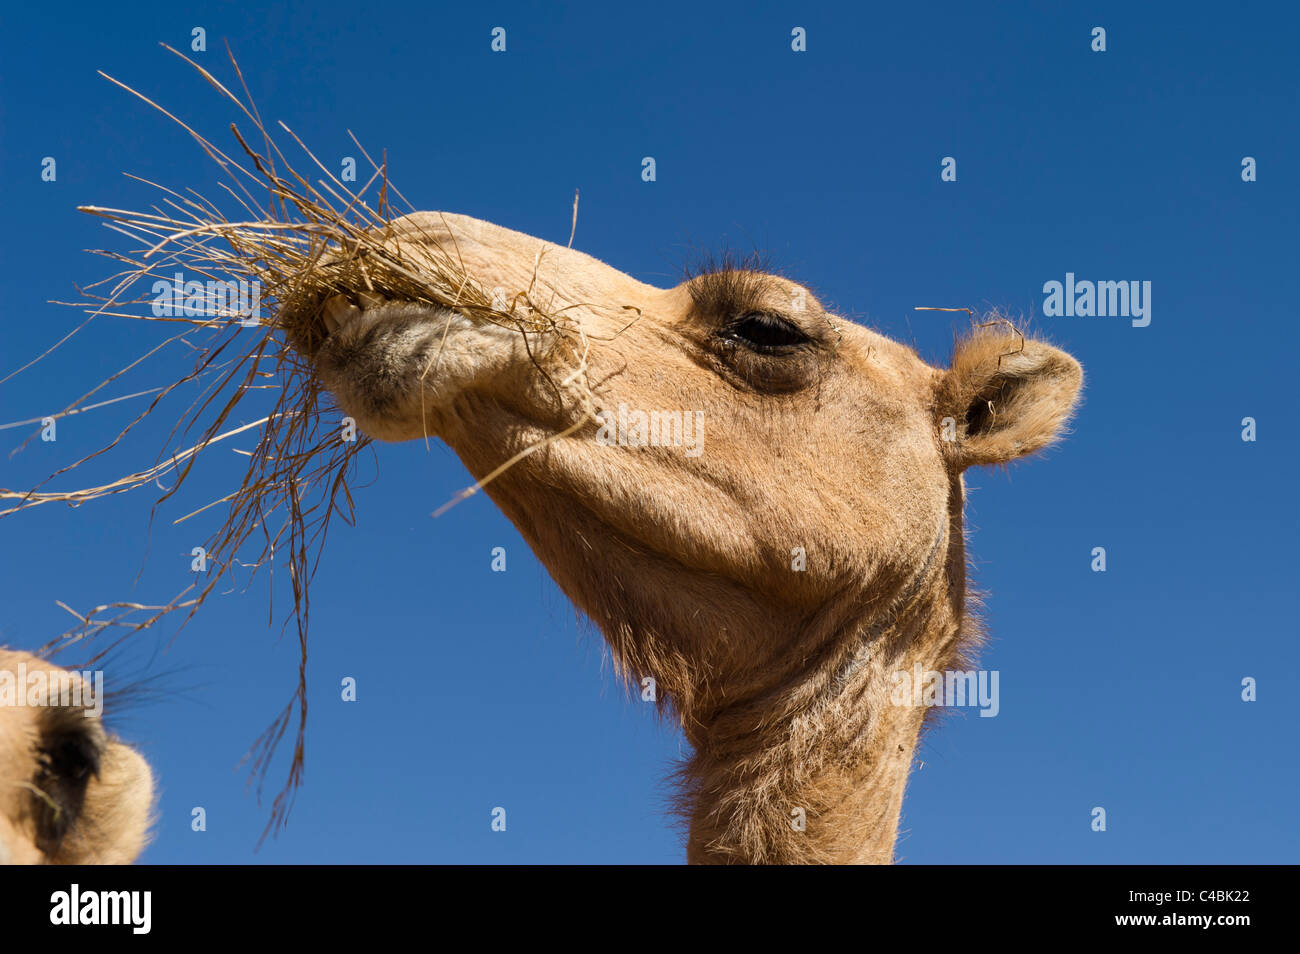 Camel, Camel and goat market, Hargeisa, Somaliland, Somalia Stock Photo